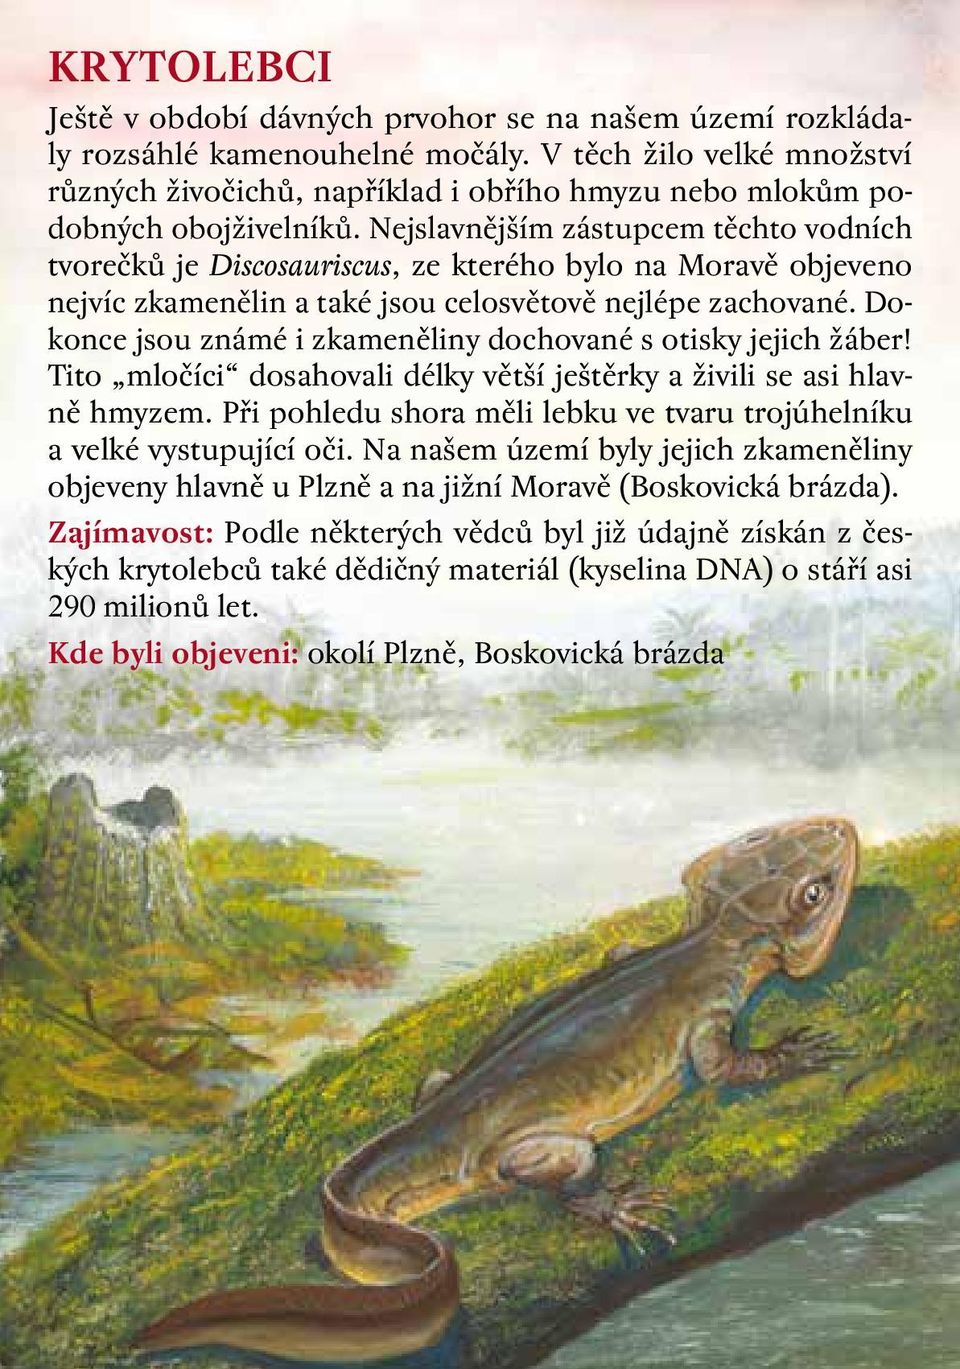 Nejslavnějším zástupcem těchto vodních tvorečků je Discosauriscus, ze kterého bylo na Moravě objeveno nejvíc zkamenělin a také jsou celosvětově nejlépe zachované.